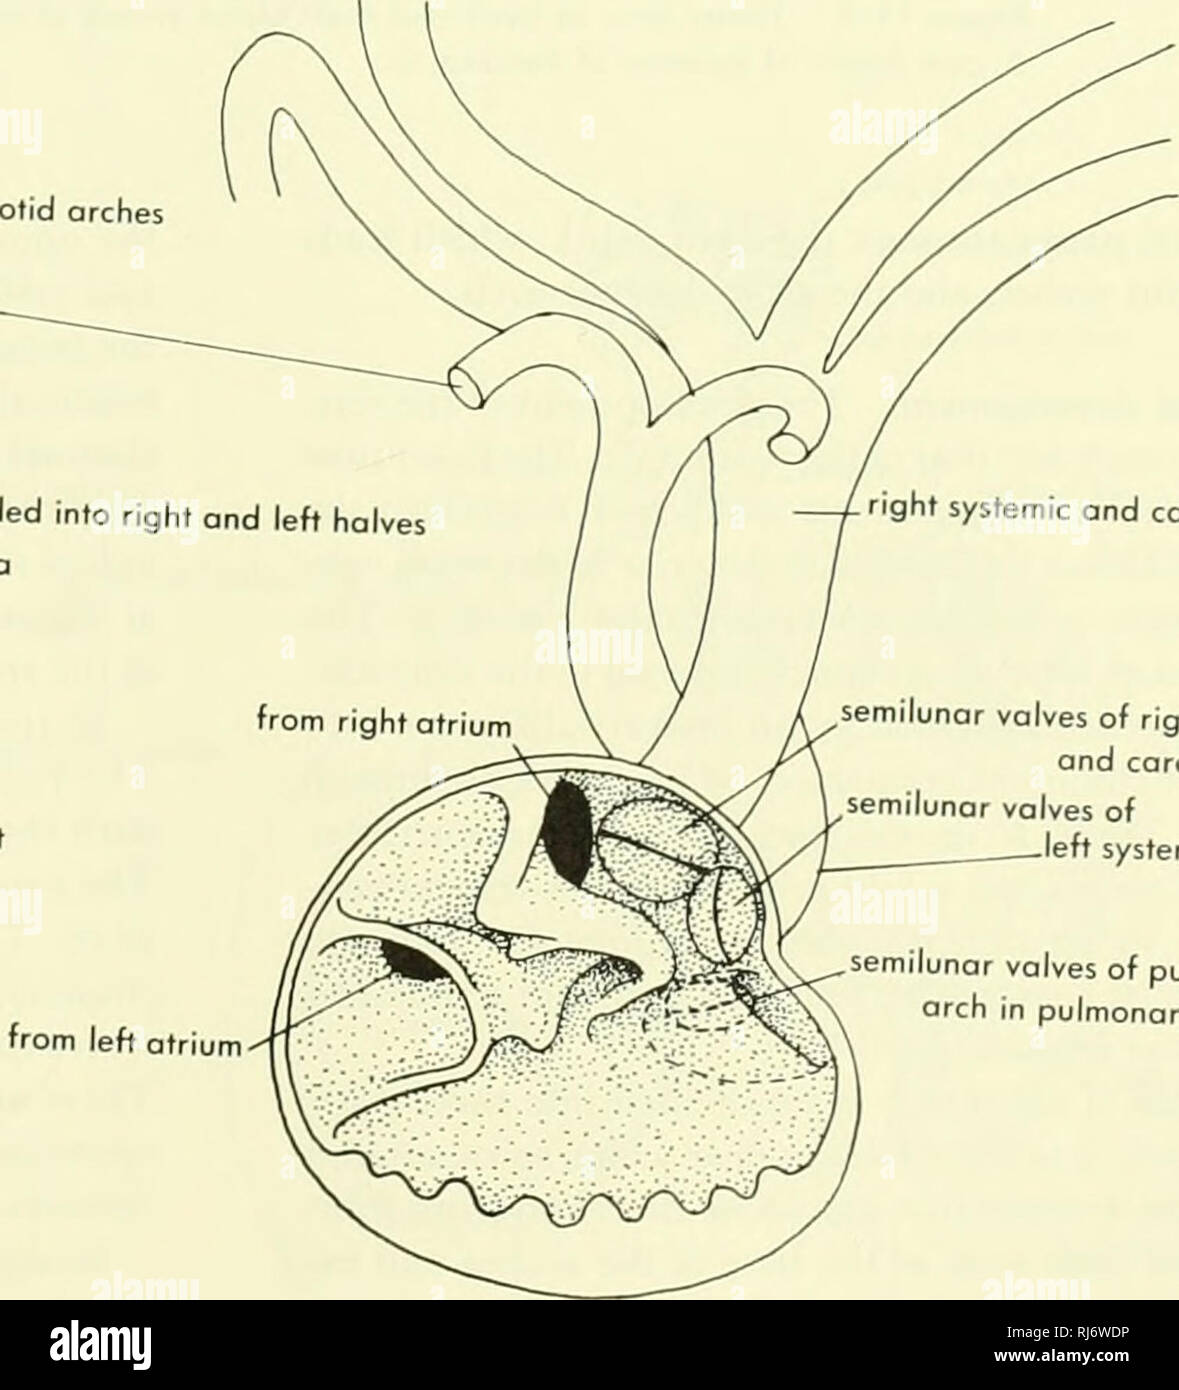 . La morphologie des chordés. La morphologie (animaux) ; Chordés. roit carotides et systémique. Valvule auriculo-ventriculaire droit et systémique, ^arch carotide artère pulmonaire Veine pulmonaire près du sinus divisé en deux moitiés droite et gauche en ouverture de l'oreillette gauche otriui poche pulmonaire valves semi-lunaires de la carotide droite et systémique des valves semi-lunaires arches aortique gauche des valves semi-lunaires arc pulmonaire en poche pulmonaire B Figure 11-2. Vue dorsale du cœur et les vaisseaux sanguins principaux du plu'mambh. A, et moitié antérieure du cœur comme vu de derrière, B. LE COEUR • 341. Veuillez noter que ces images sont e Banque D'Images